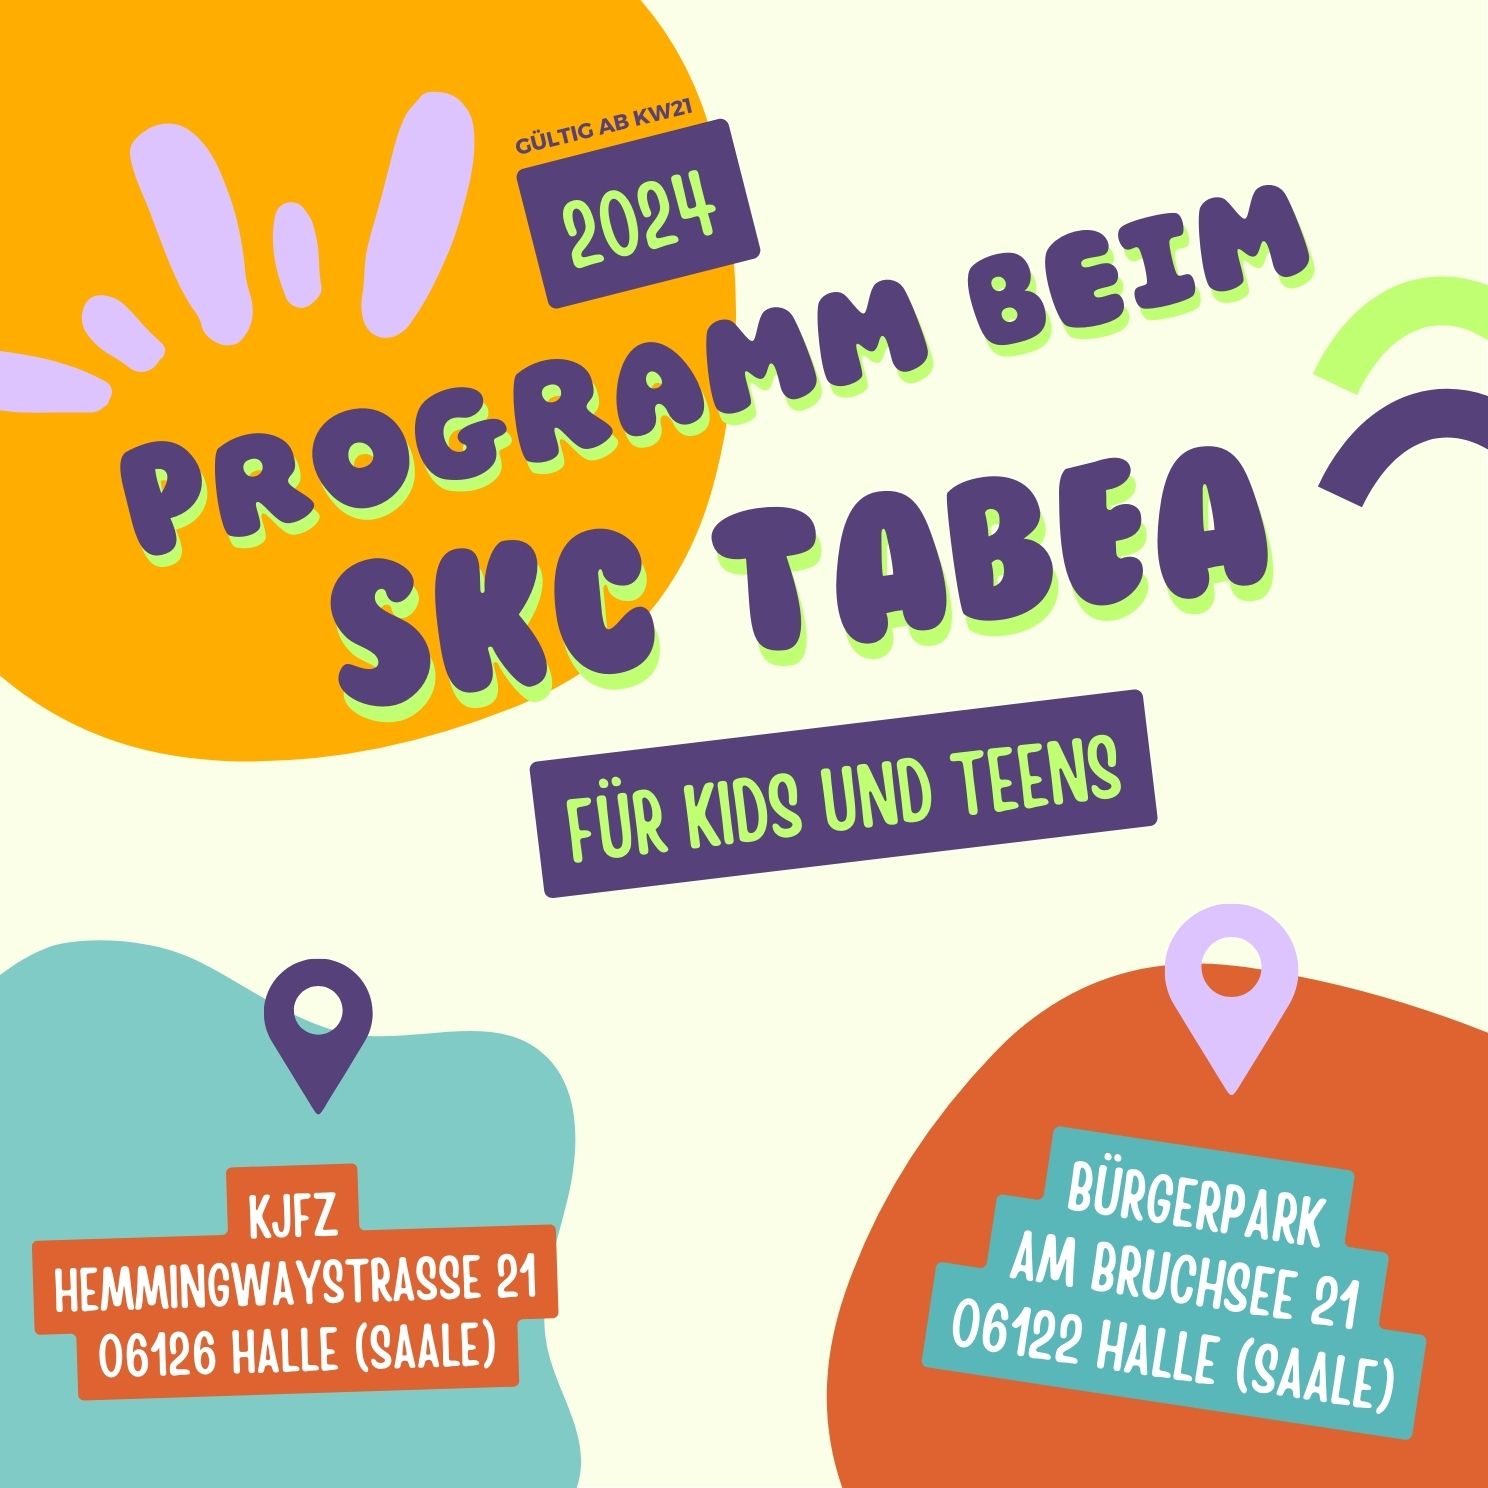 Mehr über den Artikel erfahren Kinder- und Jugendprogramm beim SKC TABEA